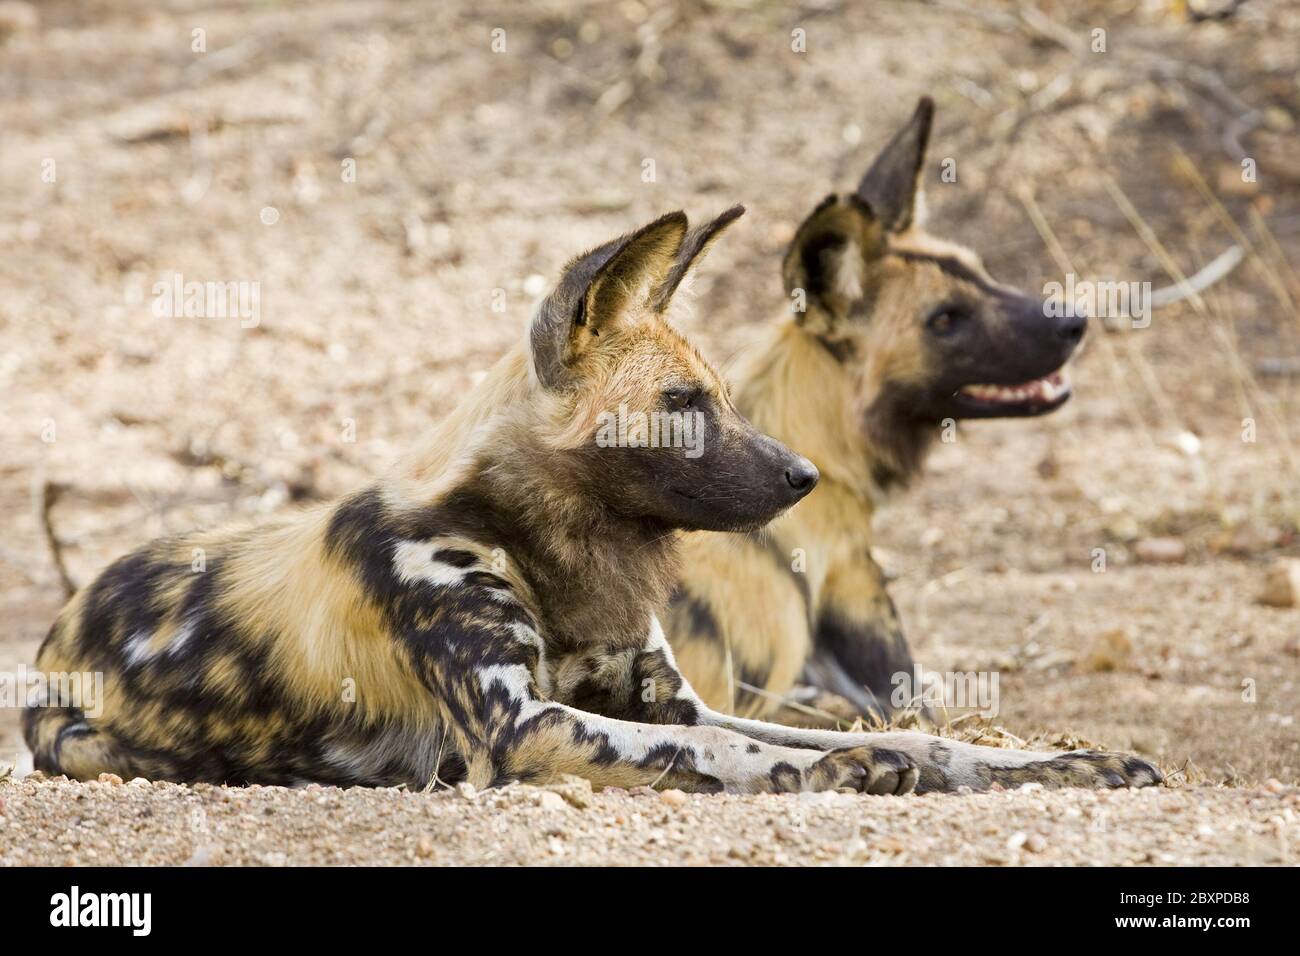 African Wilddogs, (Lycaon pictus), Etosha National Park, Namibia, Africa Stock Photo